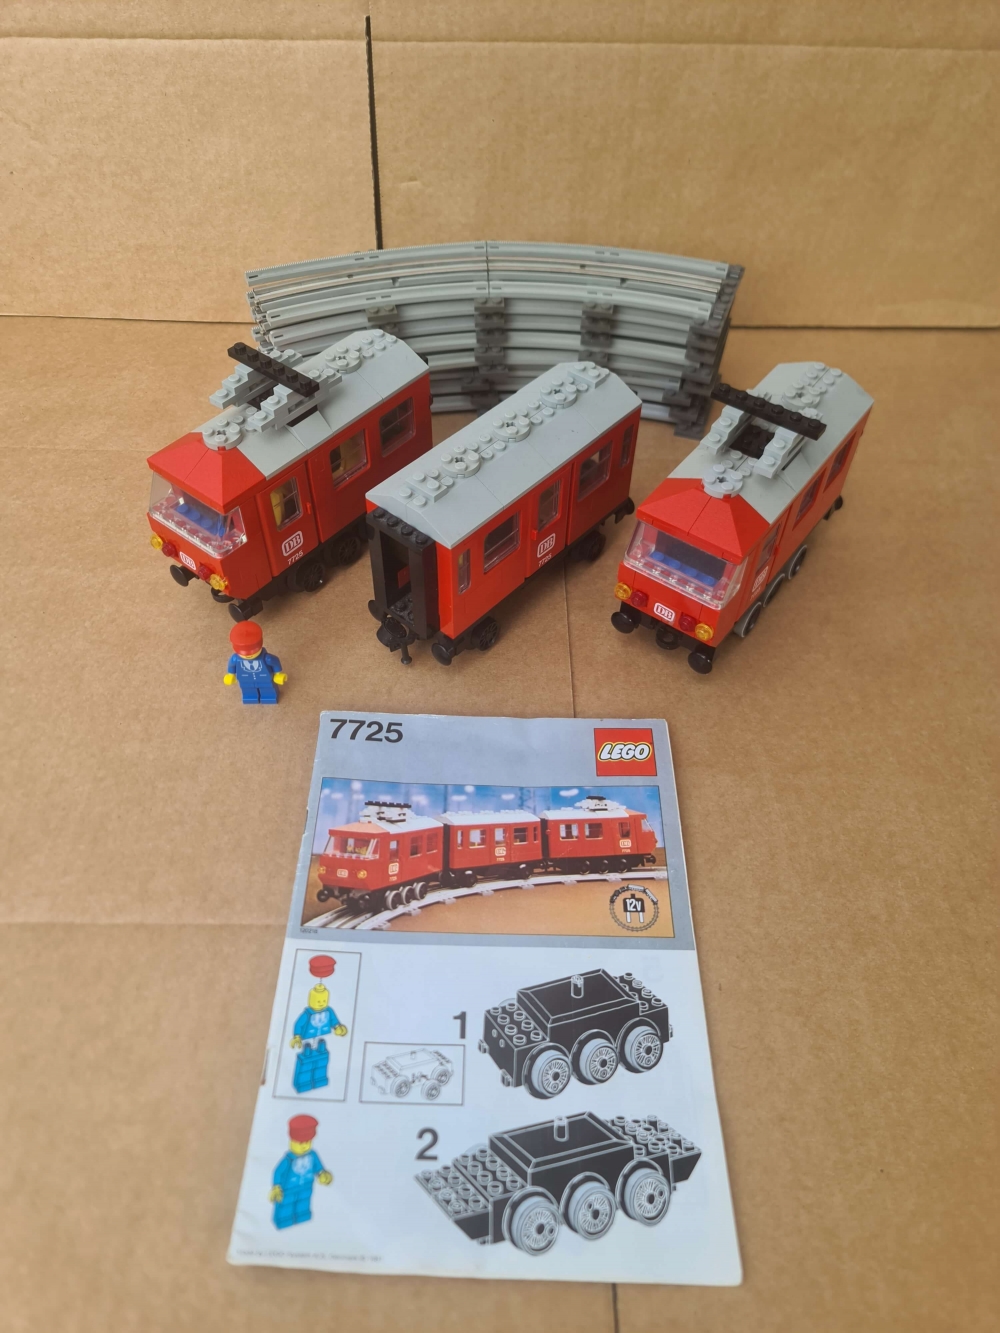 Sett 7725 fra Lego Train : 12v serien.
Flott sett. 100% komplett med nye gummiringer på hjul som alltid morkner.
Manual er også med. Fullt sett med originale DB klistremerker. God brukt stand.